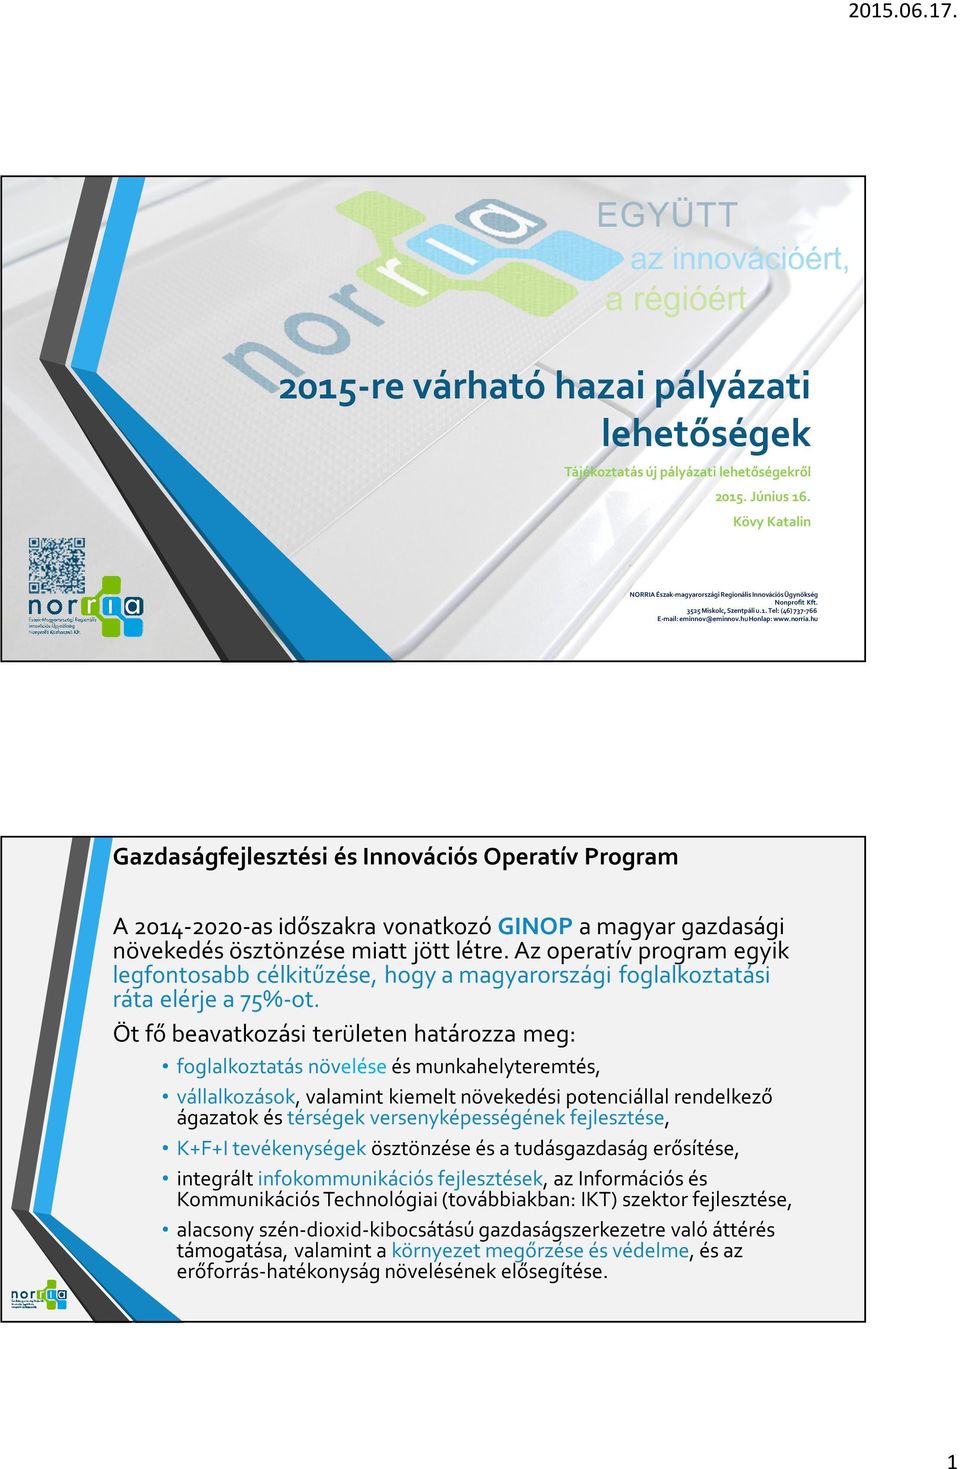 Az operatív program egyik legfontosabb célkitűzése, hogy a magyarországi foglalkoztatási ráta elérje a 75%-ot.